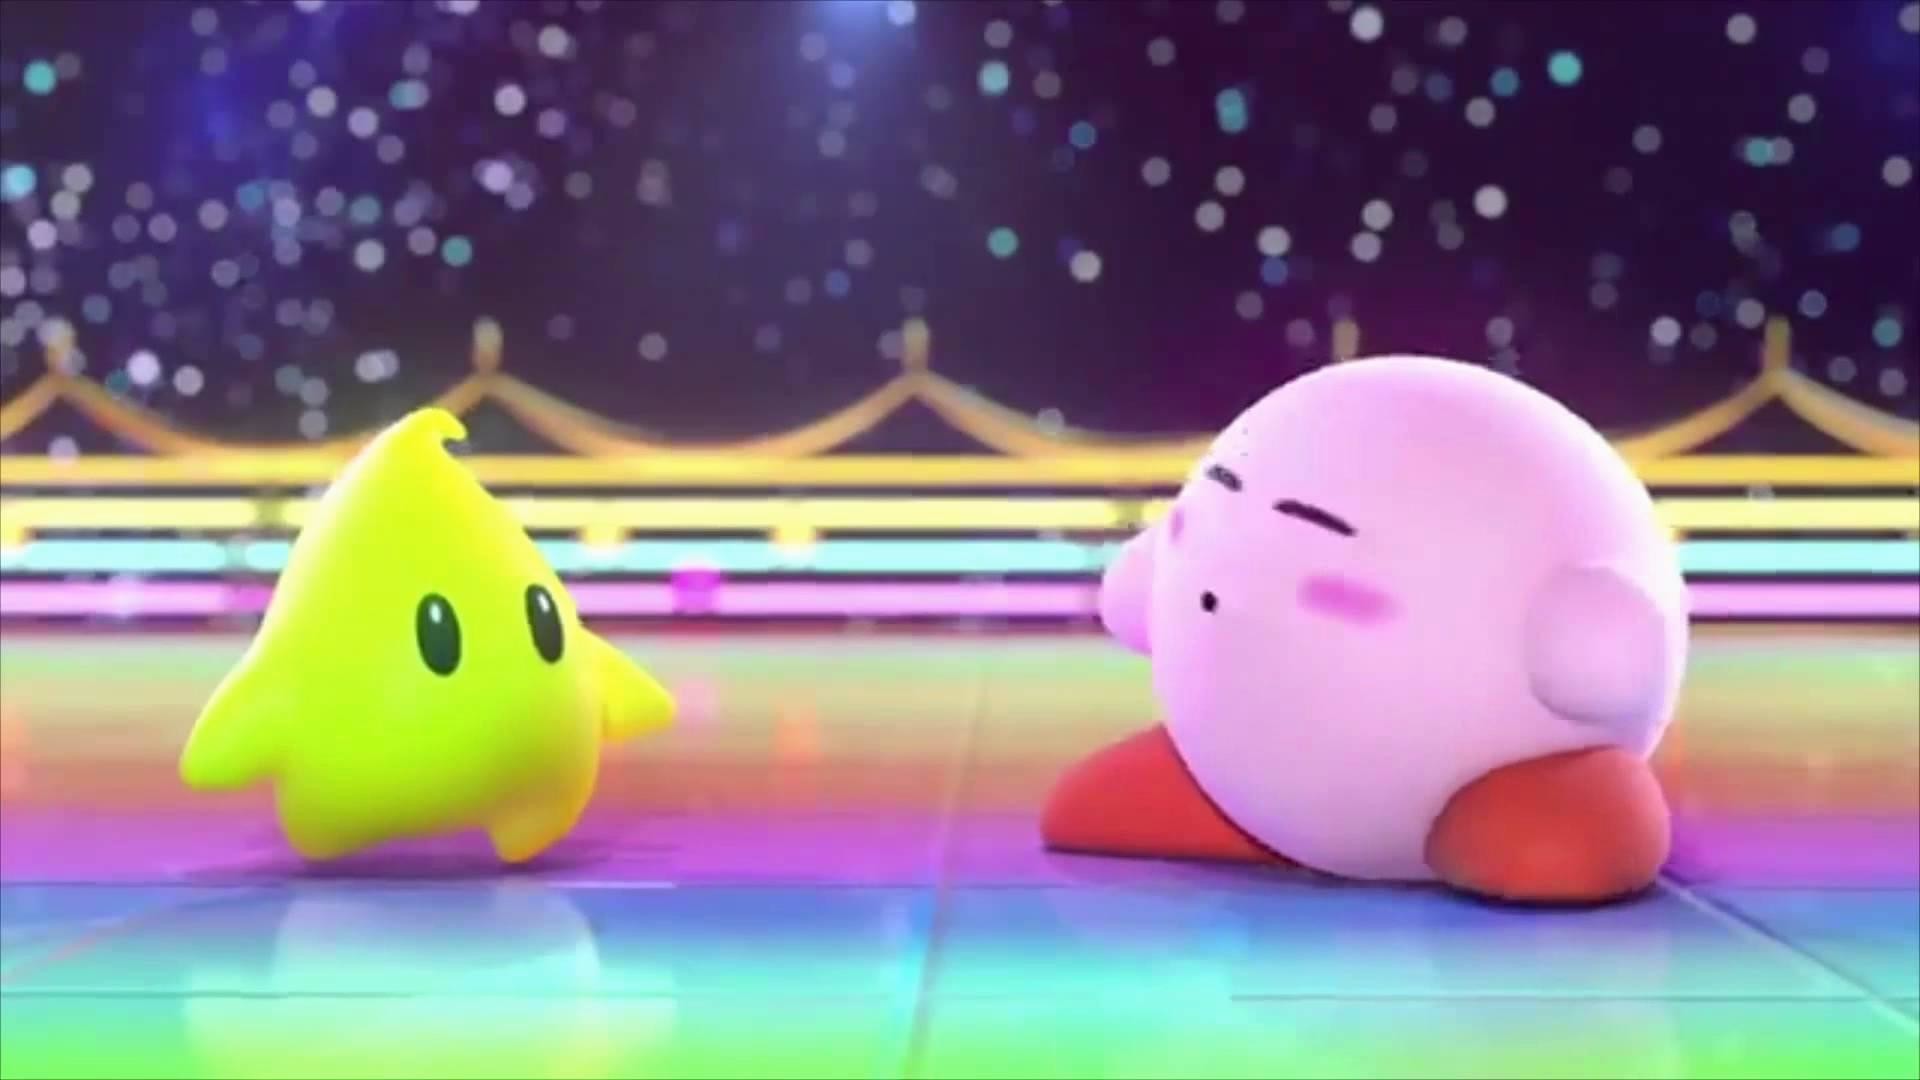 Bạn đang tìm kiếm một hình nền Kirby chất lượng HD để trang trí trên màn hình máy tính của mình? Tại đây chúng tôi có thể cung cấp cho bạn hình nền Kirby HD, đầy màu sắc và sống động để giúp bạn tận hưởng trải nghiệm thú vị mỗi khi sử dụng máy tính.